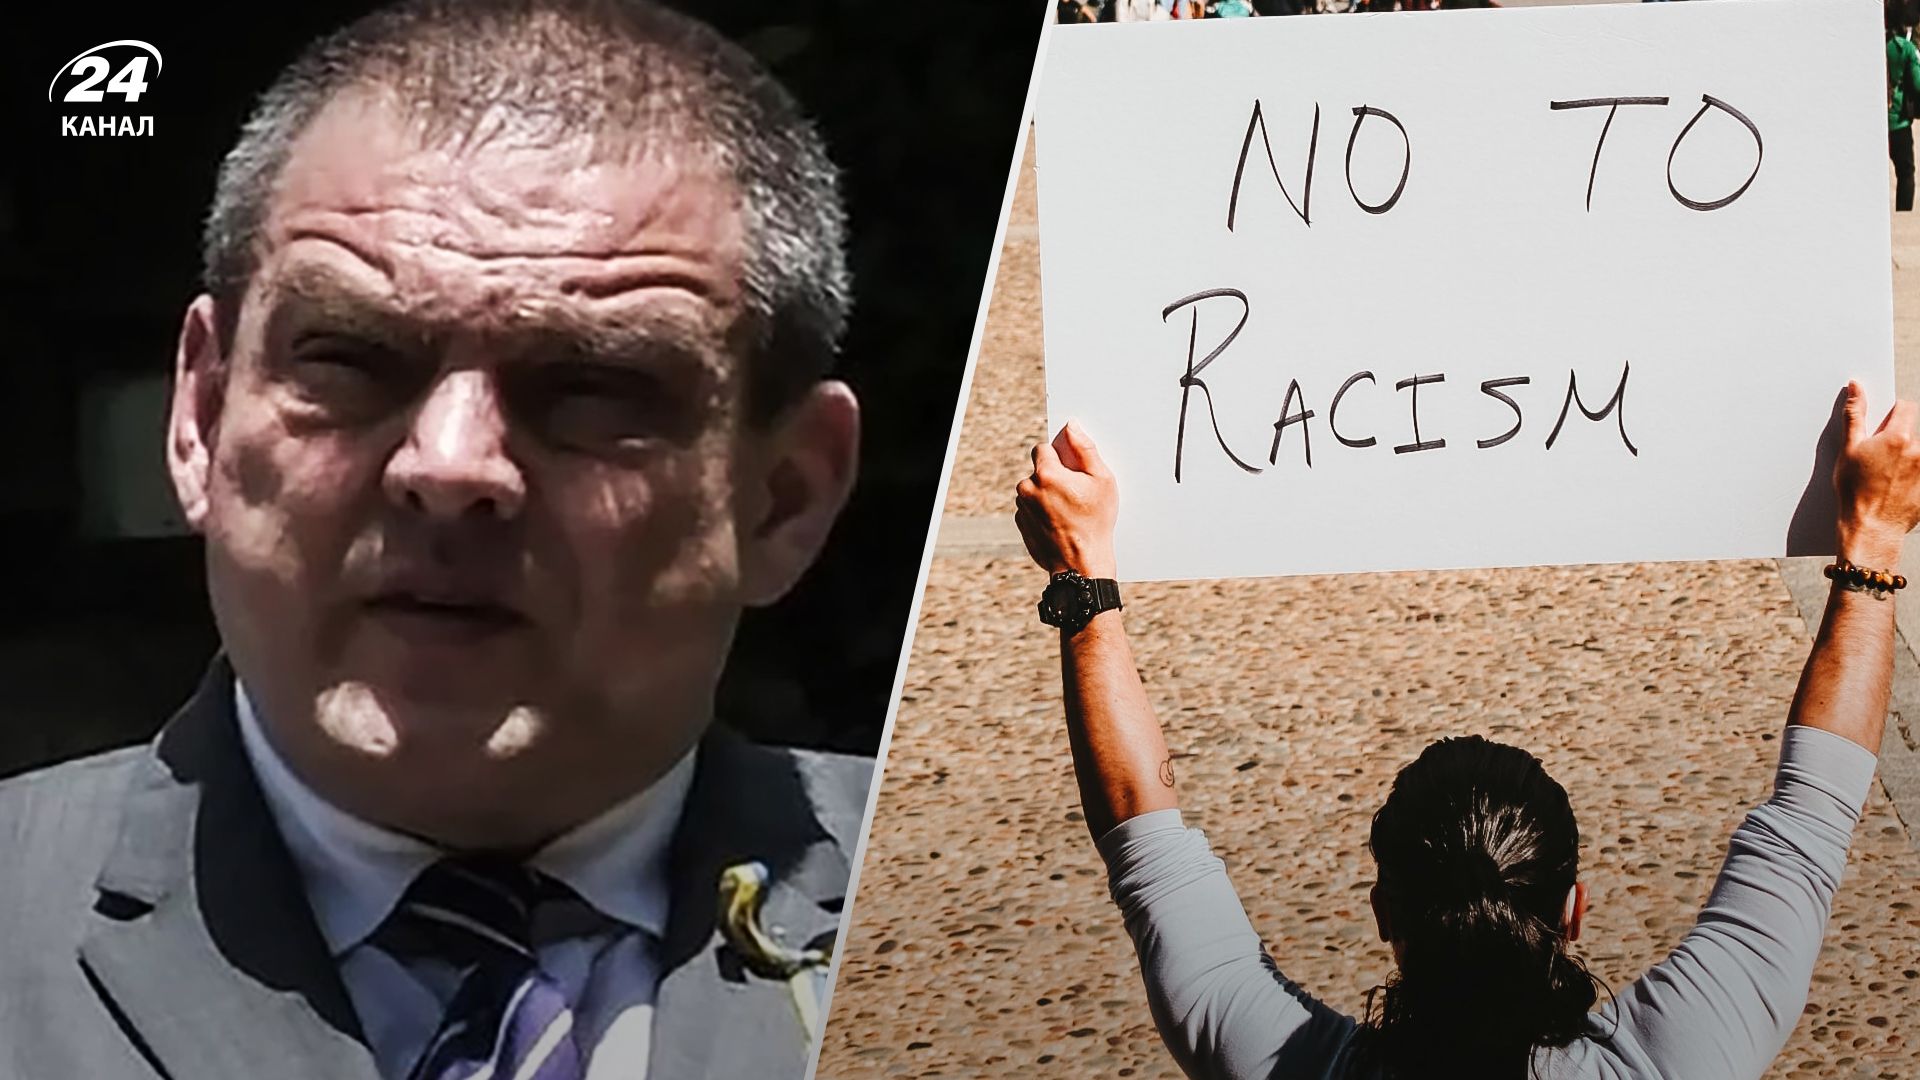 Драгош Тигау посол Румынии в Кении попал в расистский скандал - все, что известно